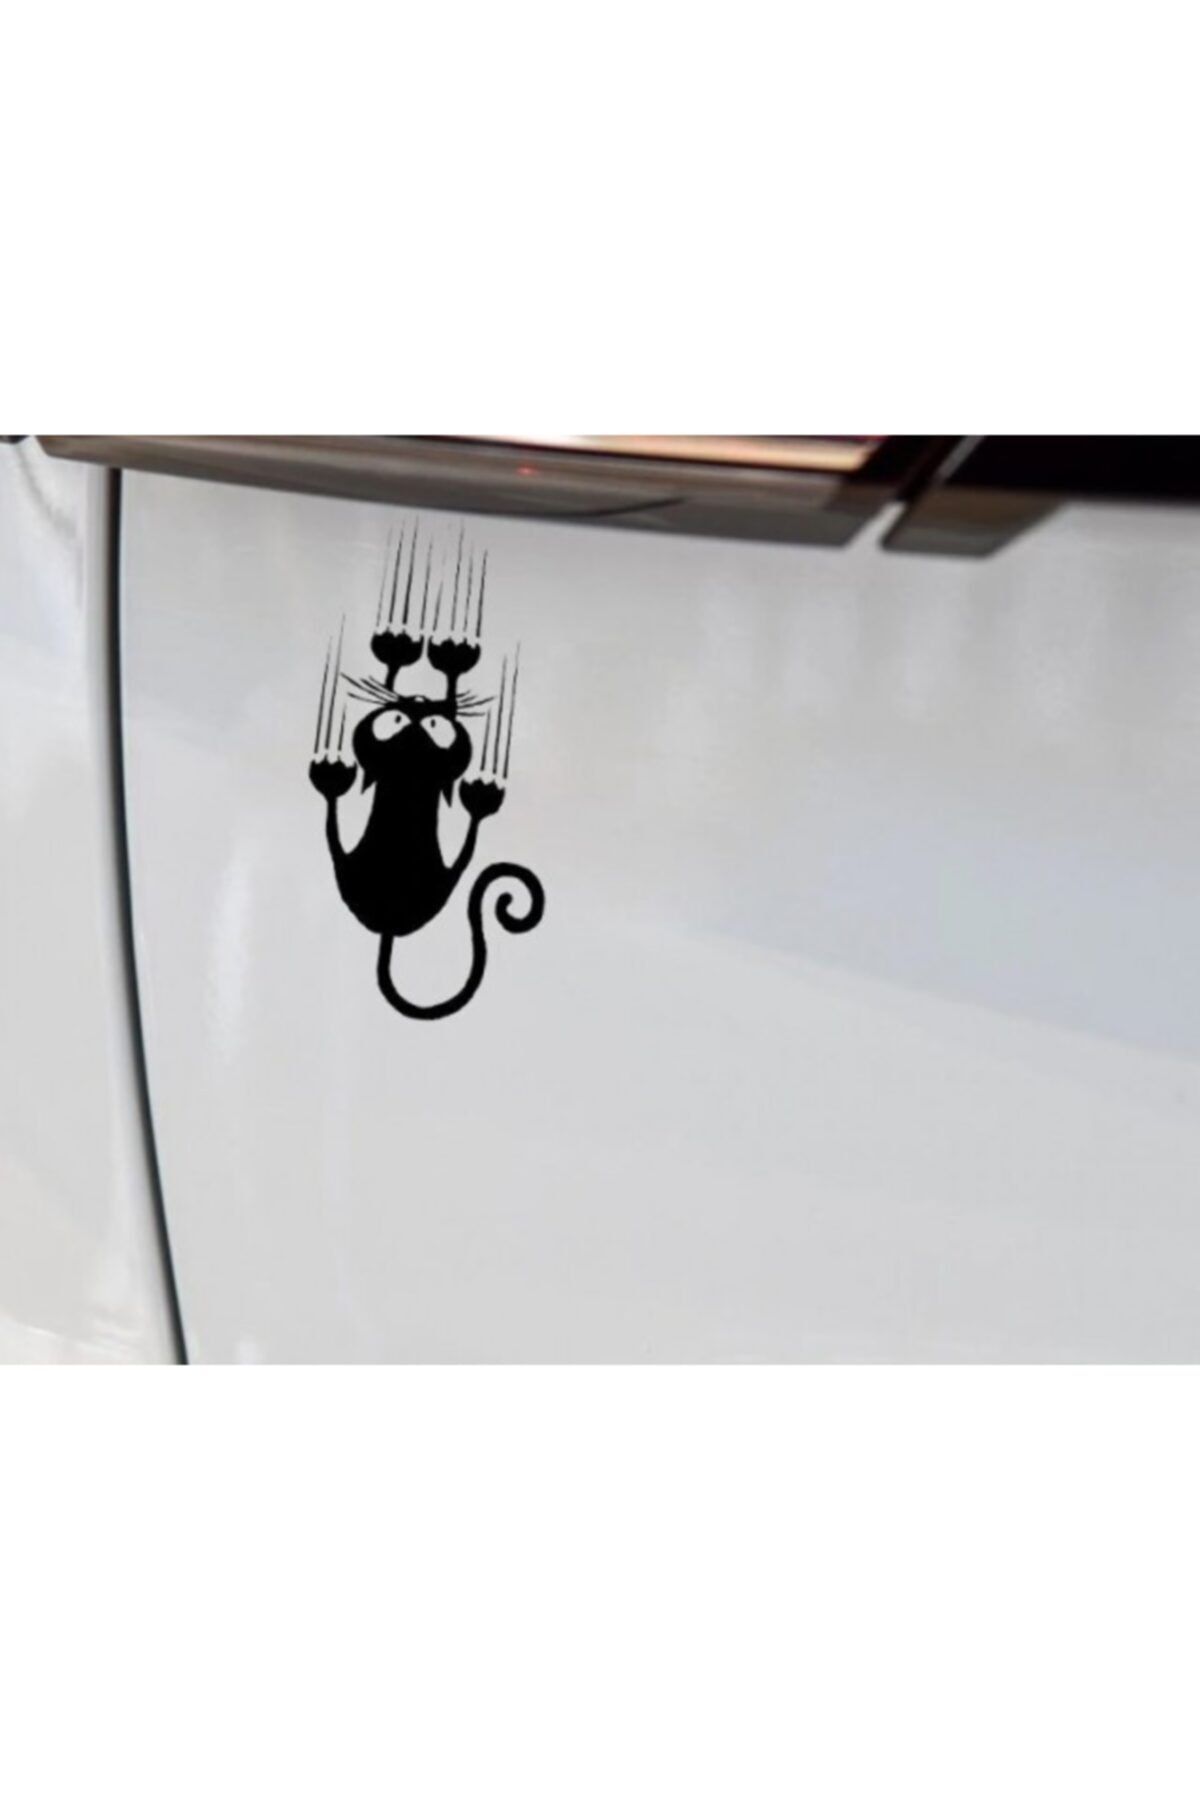 TSC Sevimli Kedi 1 Araba Sticker  Yapıştırma